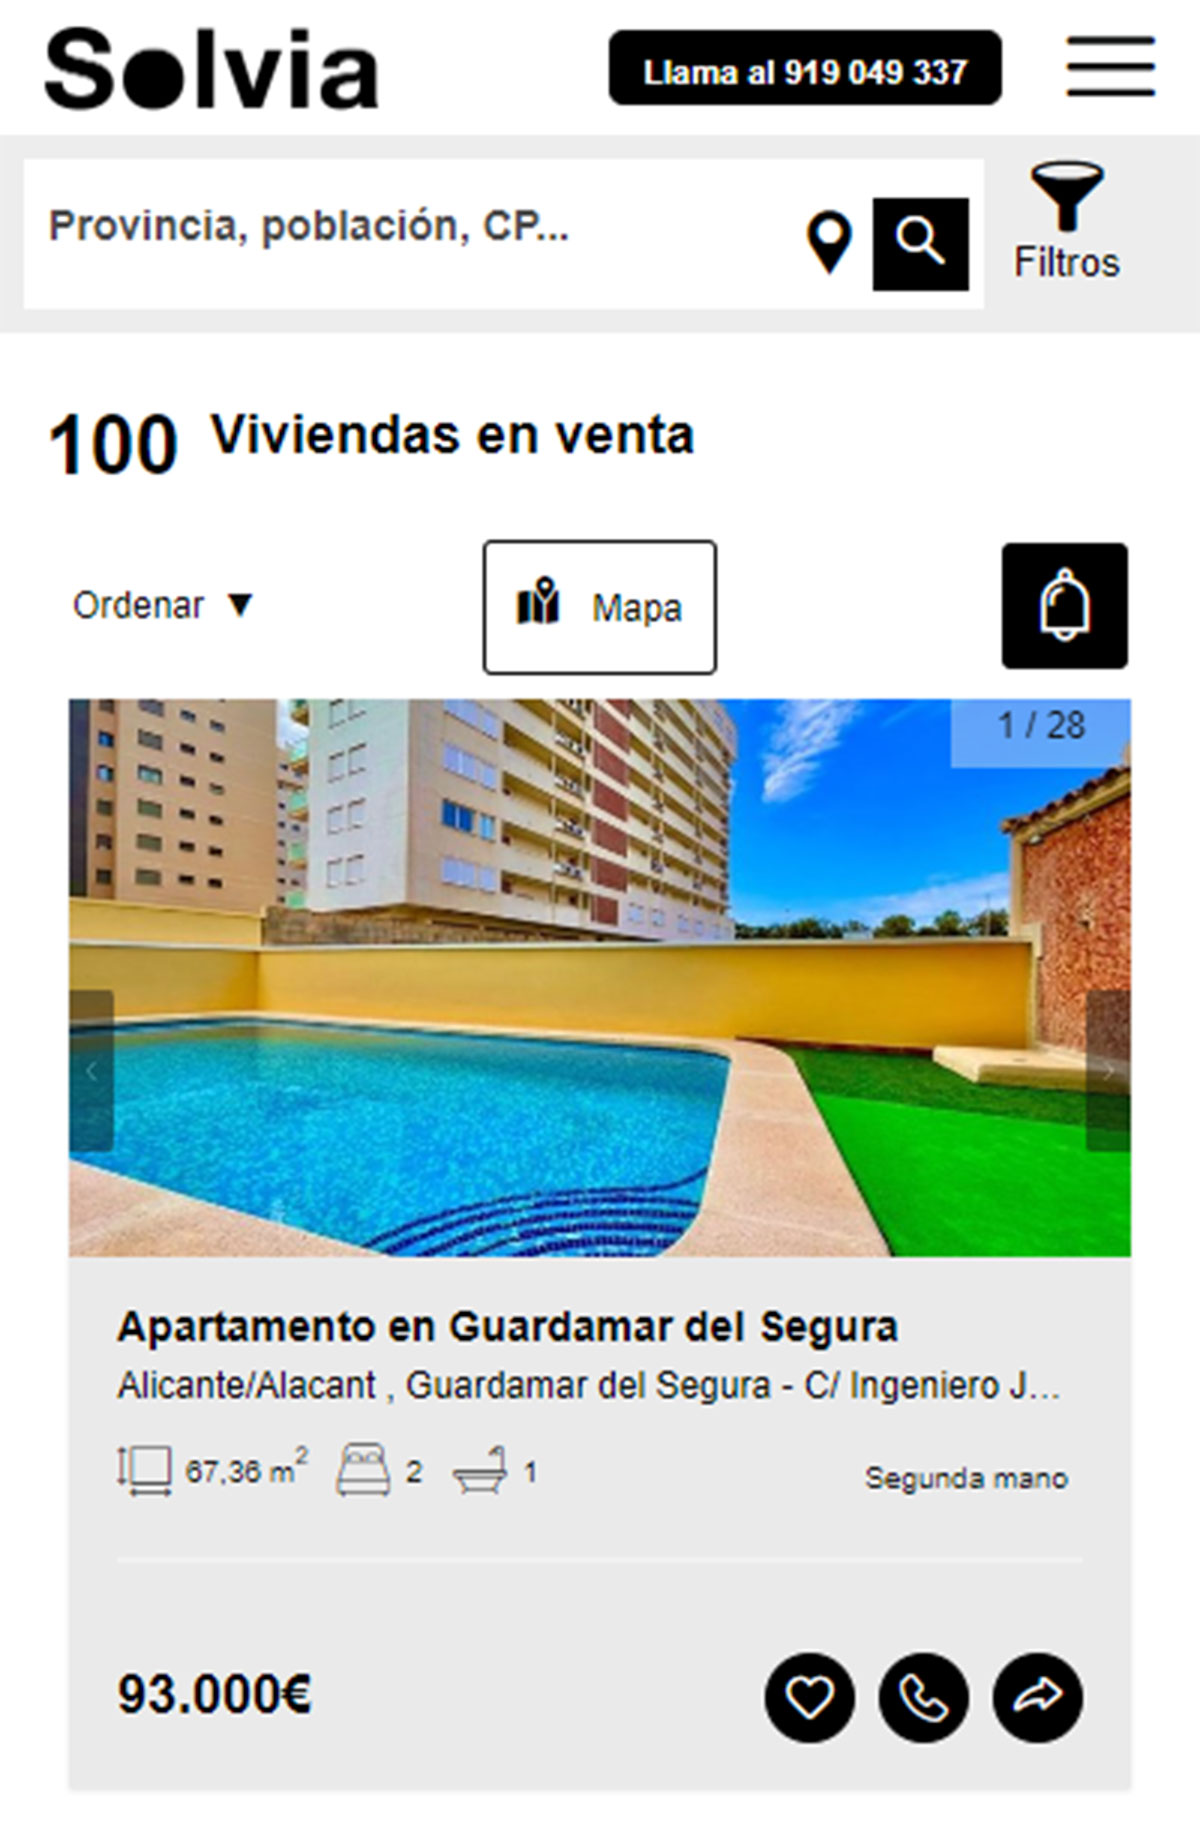 Casa a con piscina en Solvia por 93.000 euros